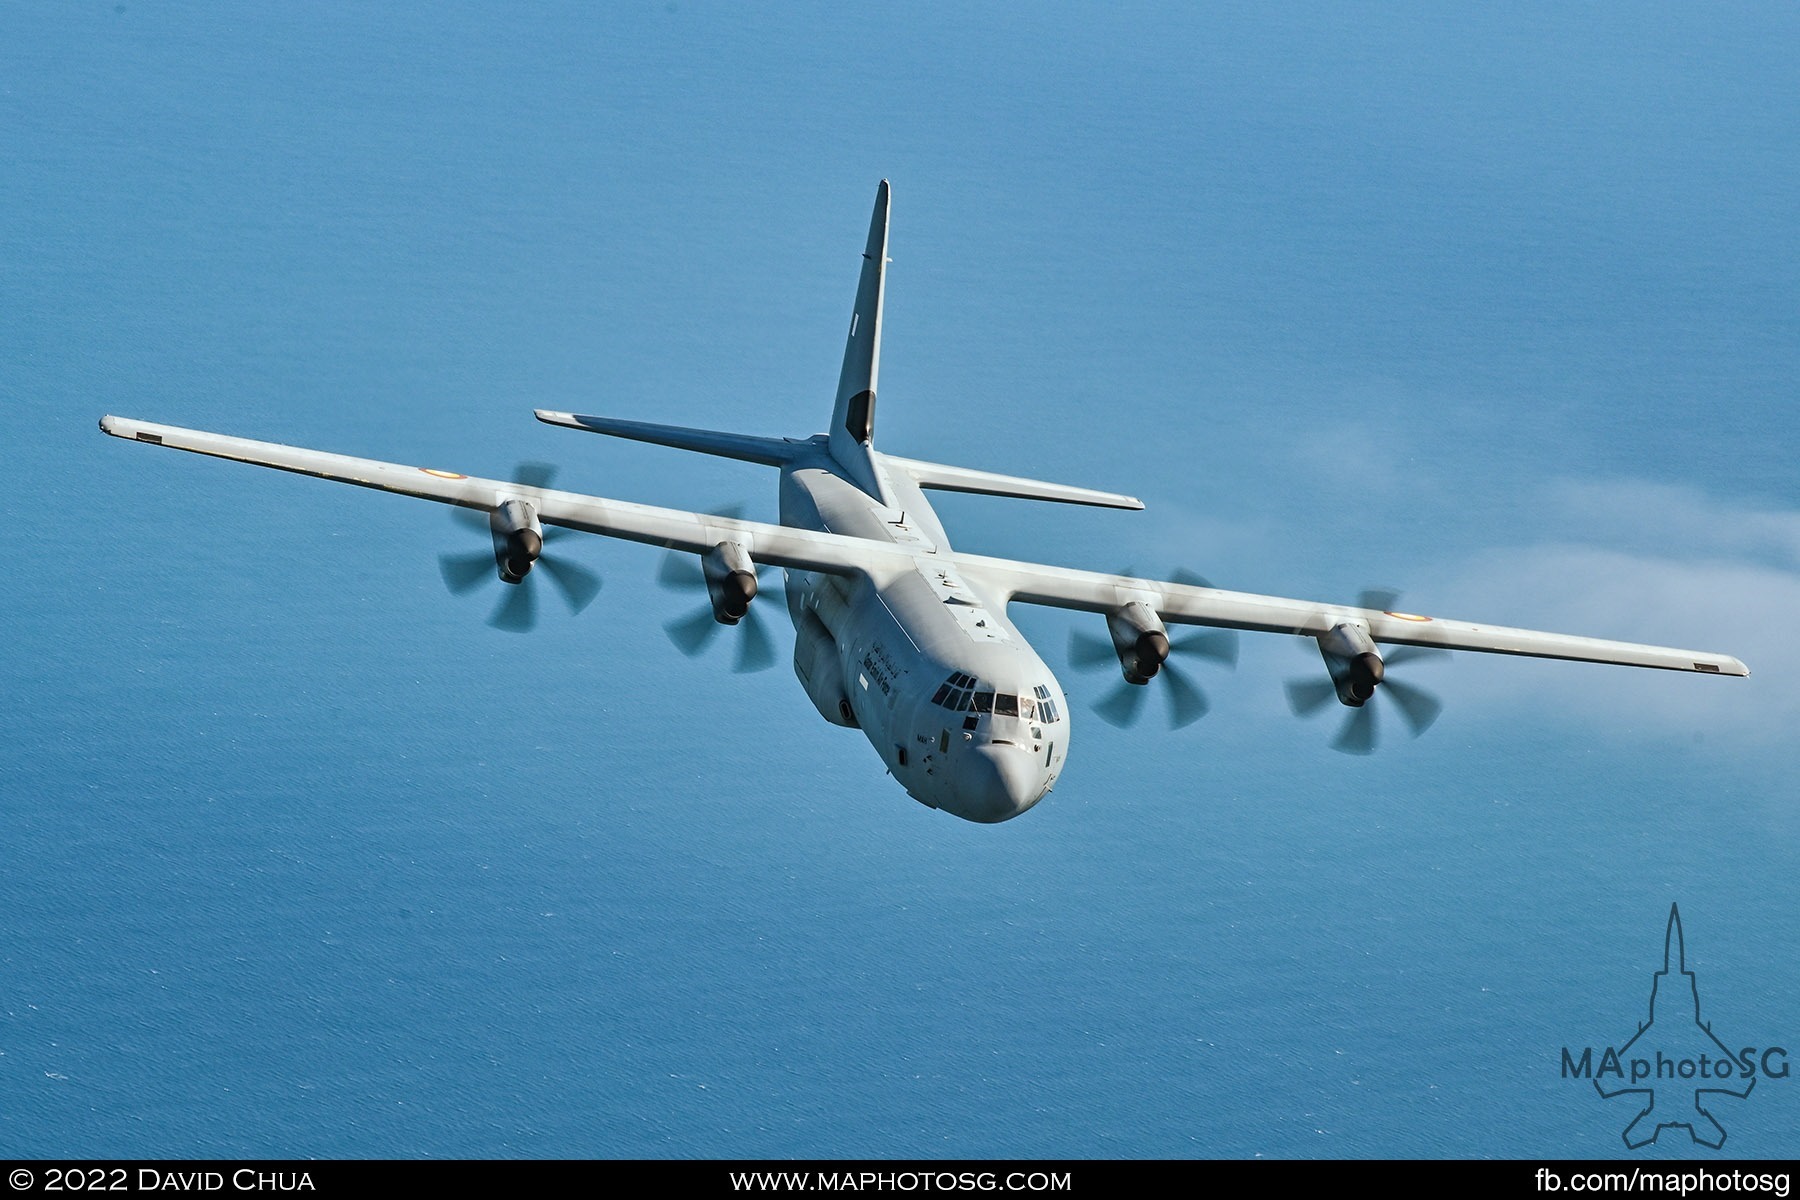 C-130J-30 Hercules from the Qatar Emiri Air Force